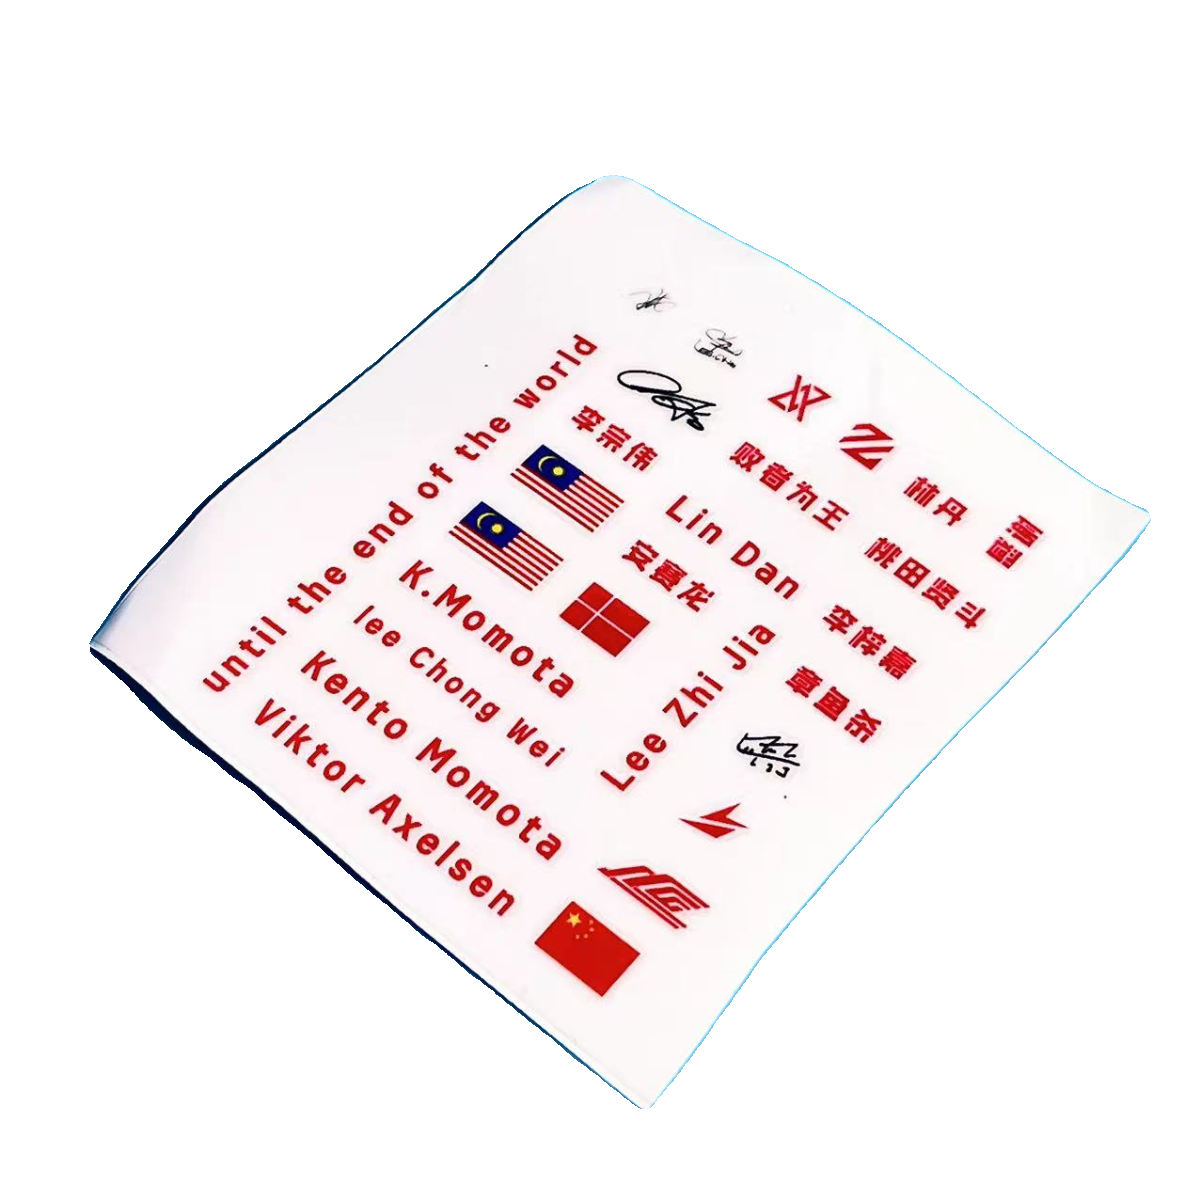 林丹李宗伟安赛龙李梓嘉签名水标贴羽毛球拍装饰转印贴纸纪念周边-图3